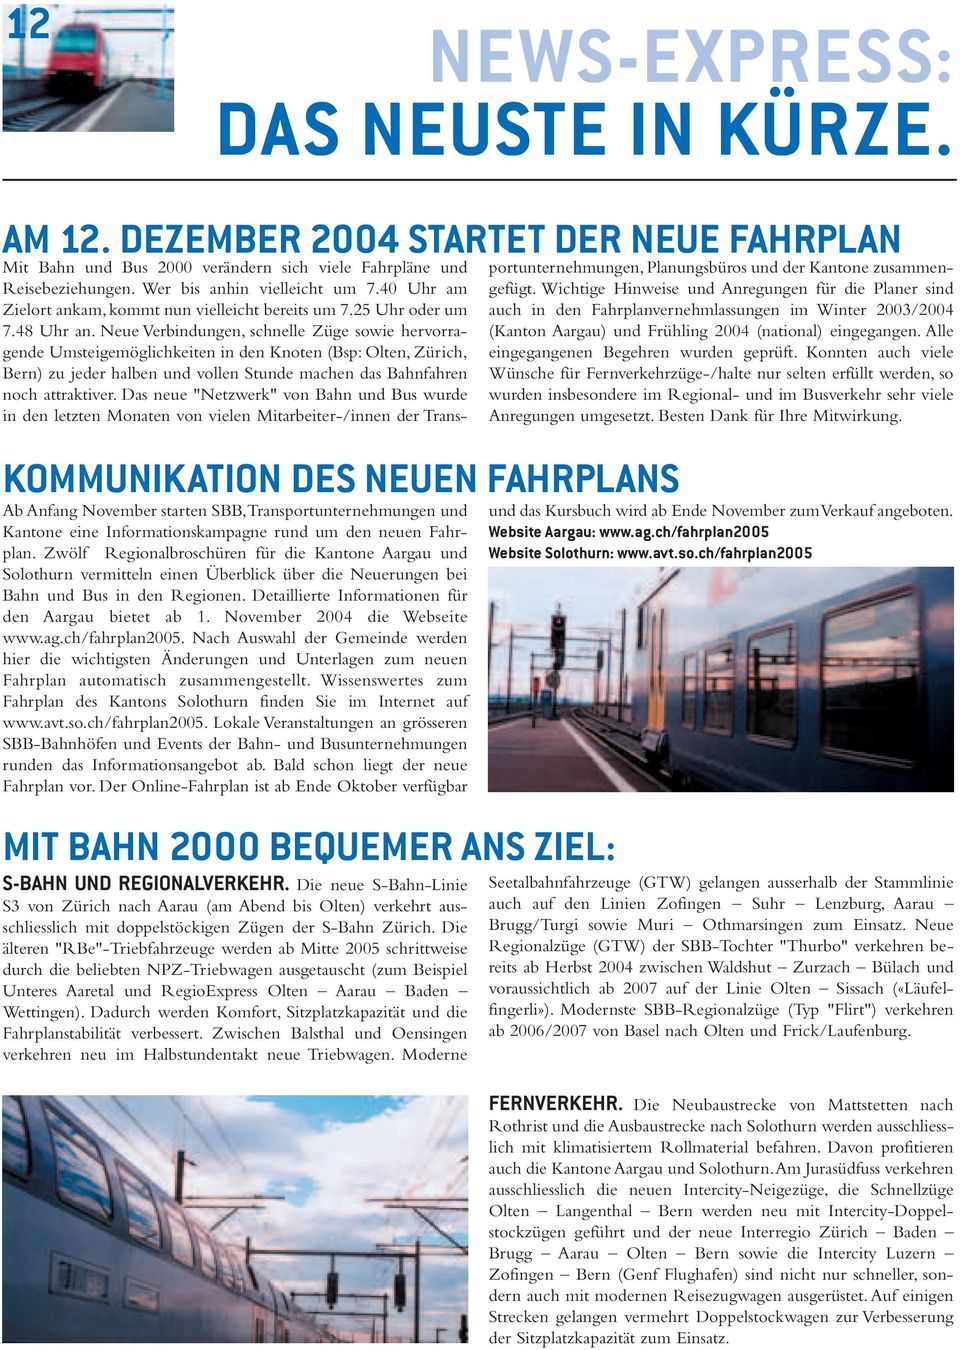 Zwölf Regionalbroschüren für die Kantone Aargau und Solothurn vermitteln einen Überblick über die Neuerungen bei Bahn und Bus in den Regionen. Detaillierte Informationen für den Aargau bietet ab 1.